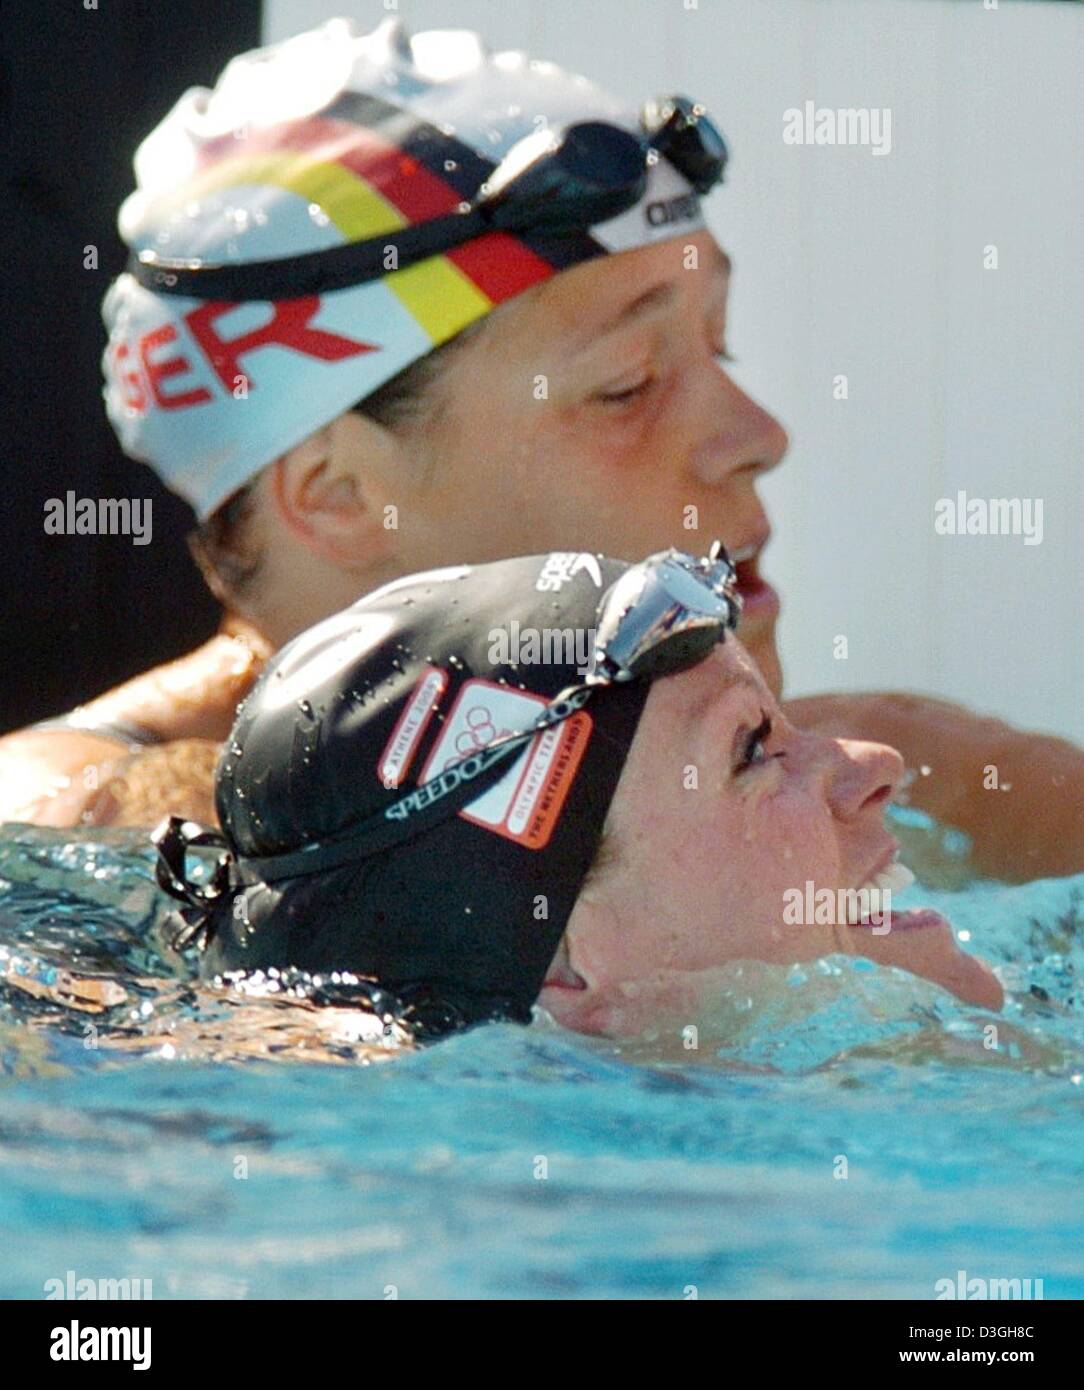 (Dpa) - kümmert sich um deutsche Schwimmerin Sandra Voelker (wieder) enttäuscht nicht die Qualifikation für das Halbfinale in ihre Frauen 50m Freestyle Hitze an die 2004 Olympic Aquatic Centre in Athen, Griechenland, 20. August 2004, während der niederländischen Weltrekordhalter Inge de Bruijn lächelt. De Bruijn fuhr die schnellste Gesamtzeit. Stockfoto